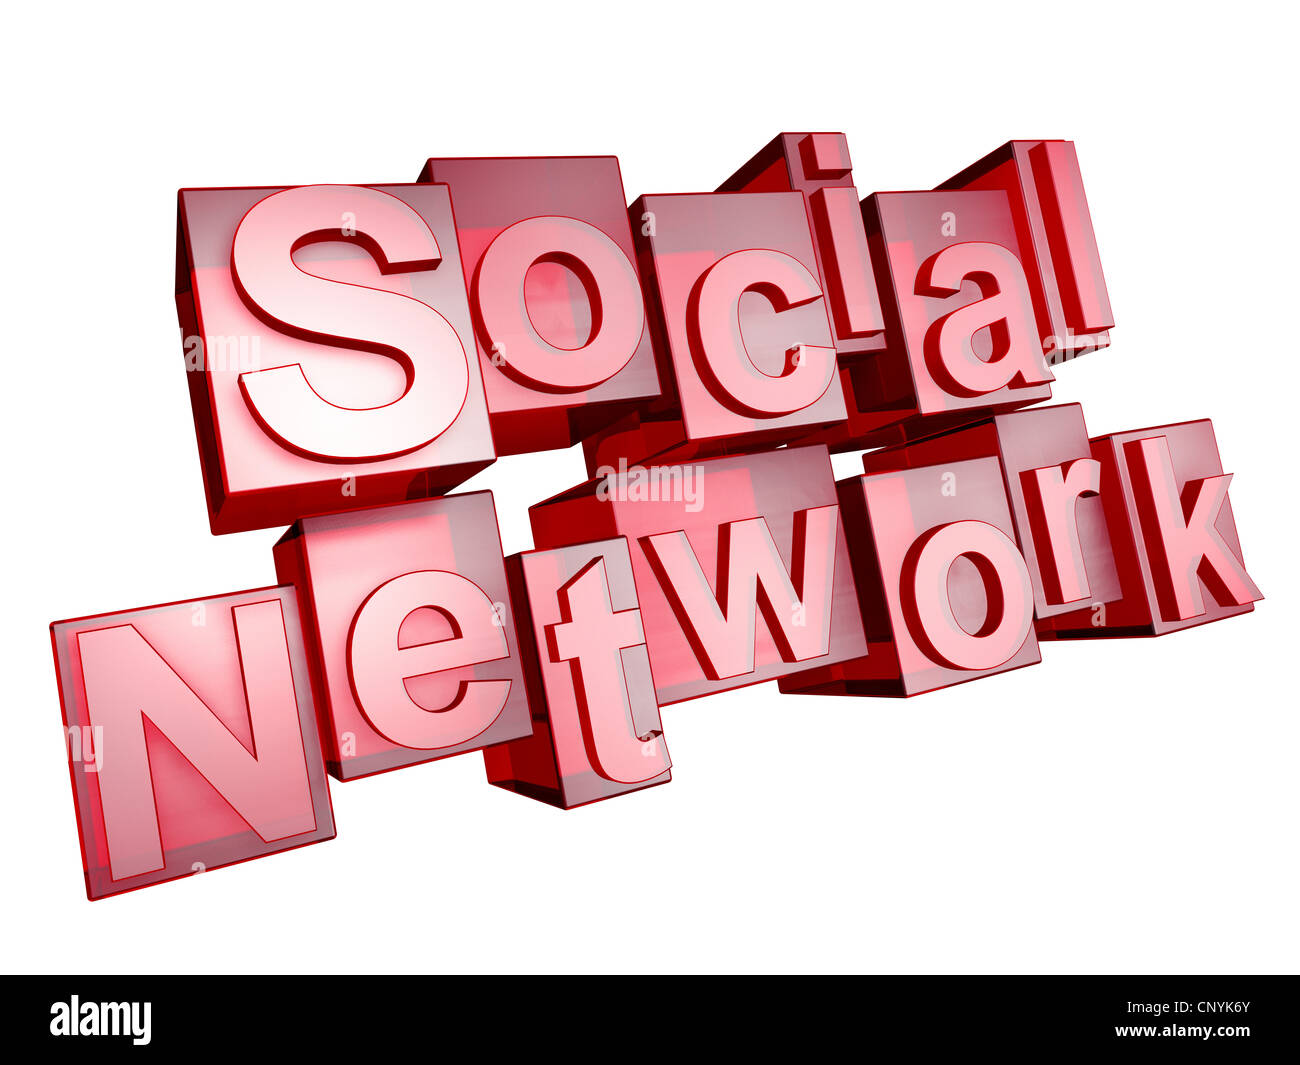 Le mot "social network' dans 3D lettres sur fond blanc Banque D'Images